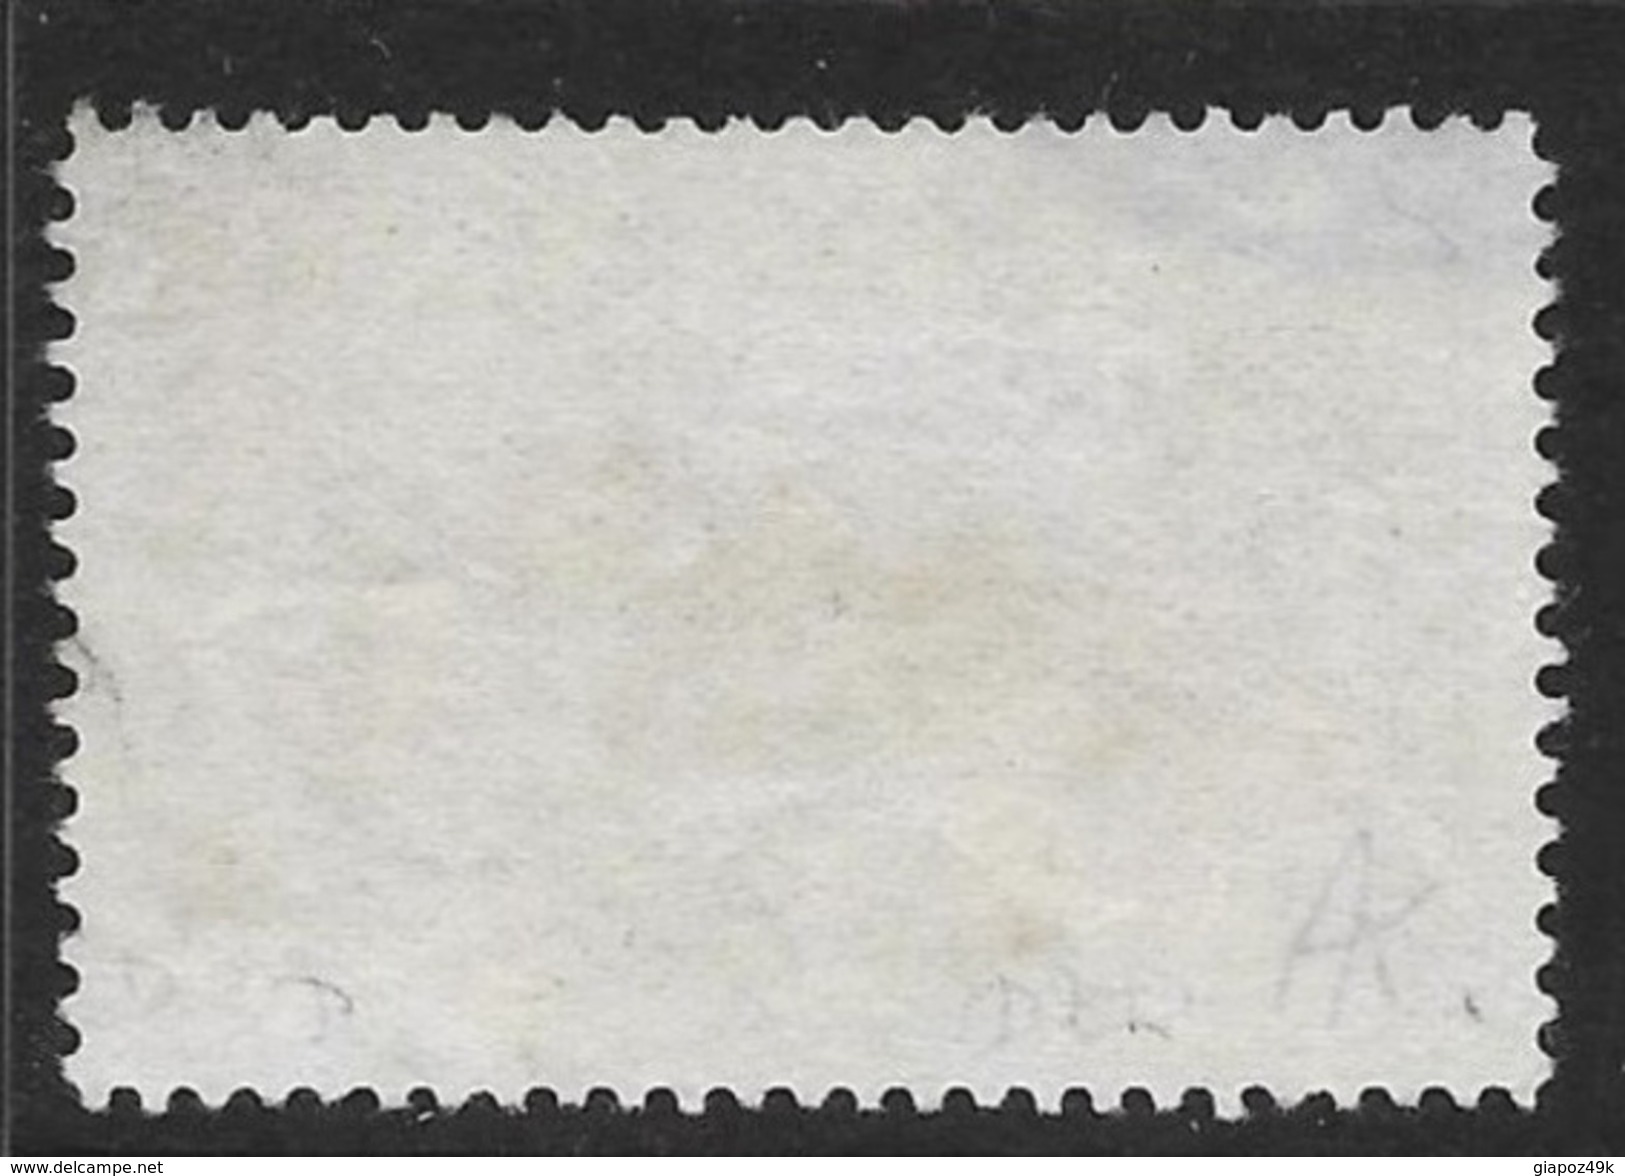 TURCHIA 1914 - Abrogazione Della Capitolazione -  N.° 206  - Cat. 80,00 &euro;  - Lotto N. 835 - 1920-21 Anatolia